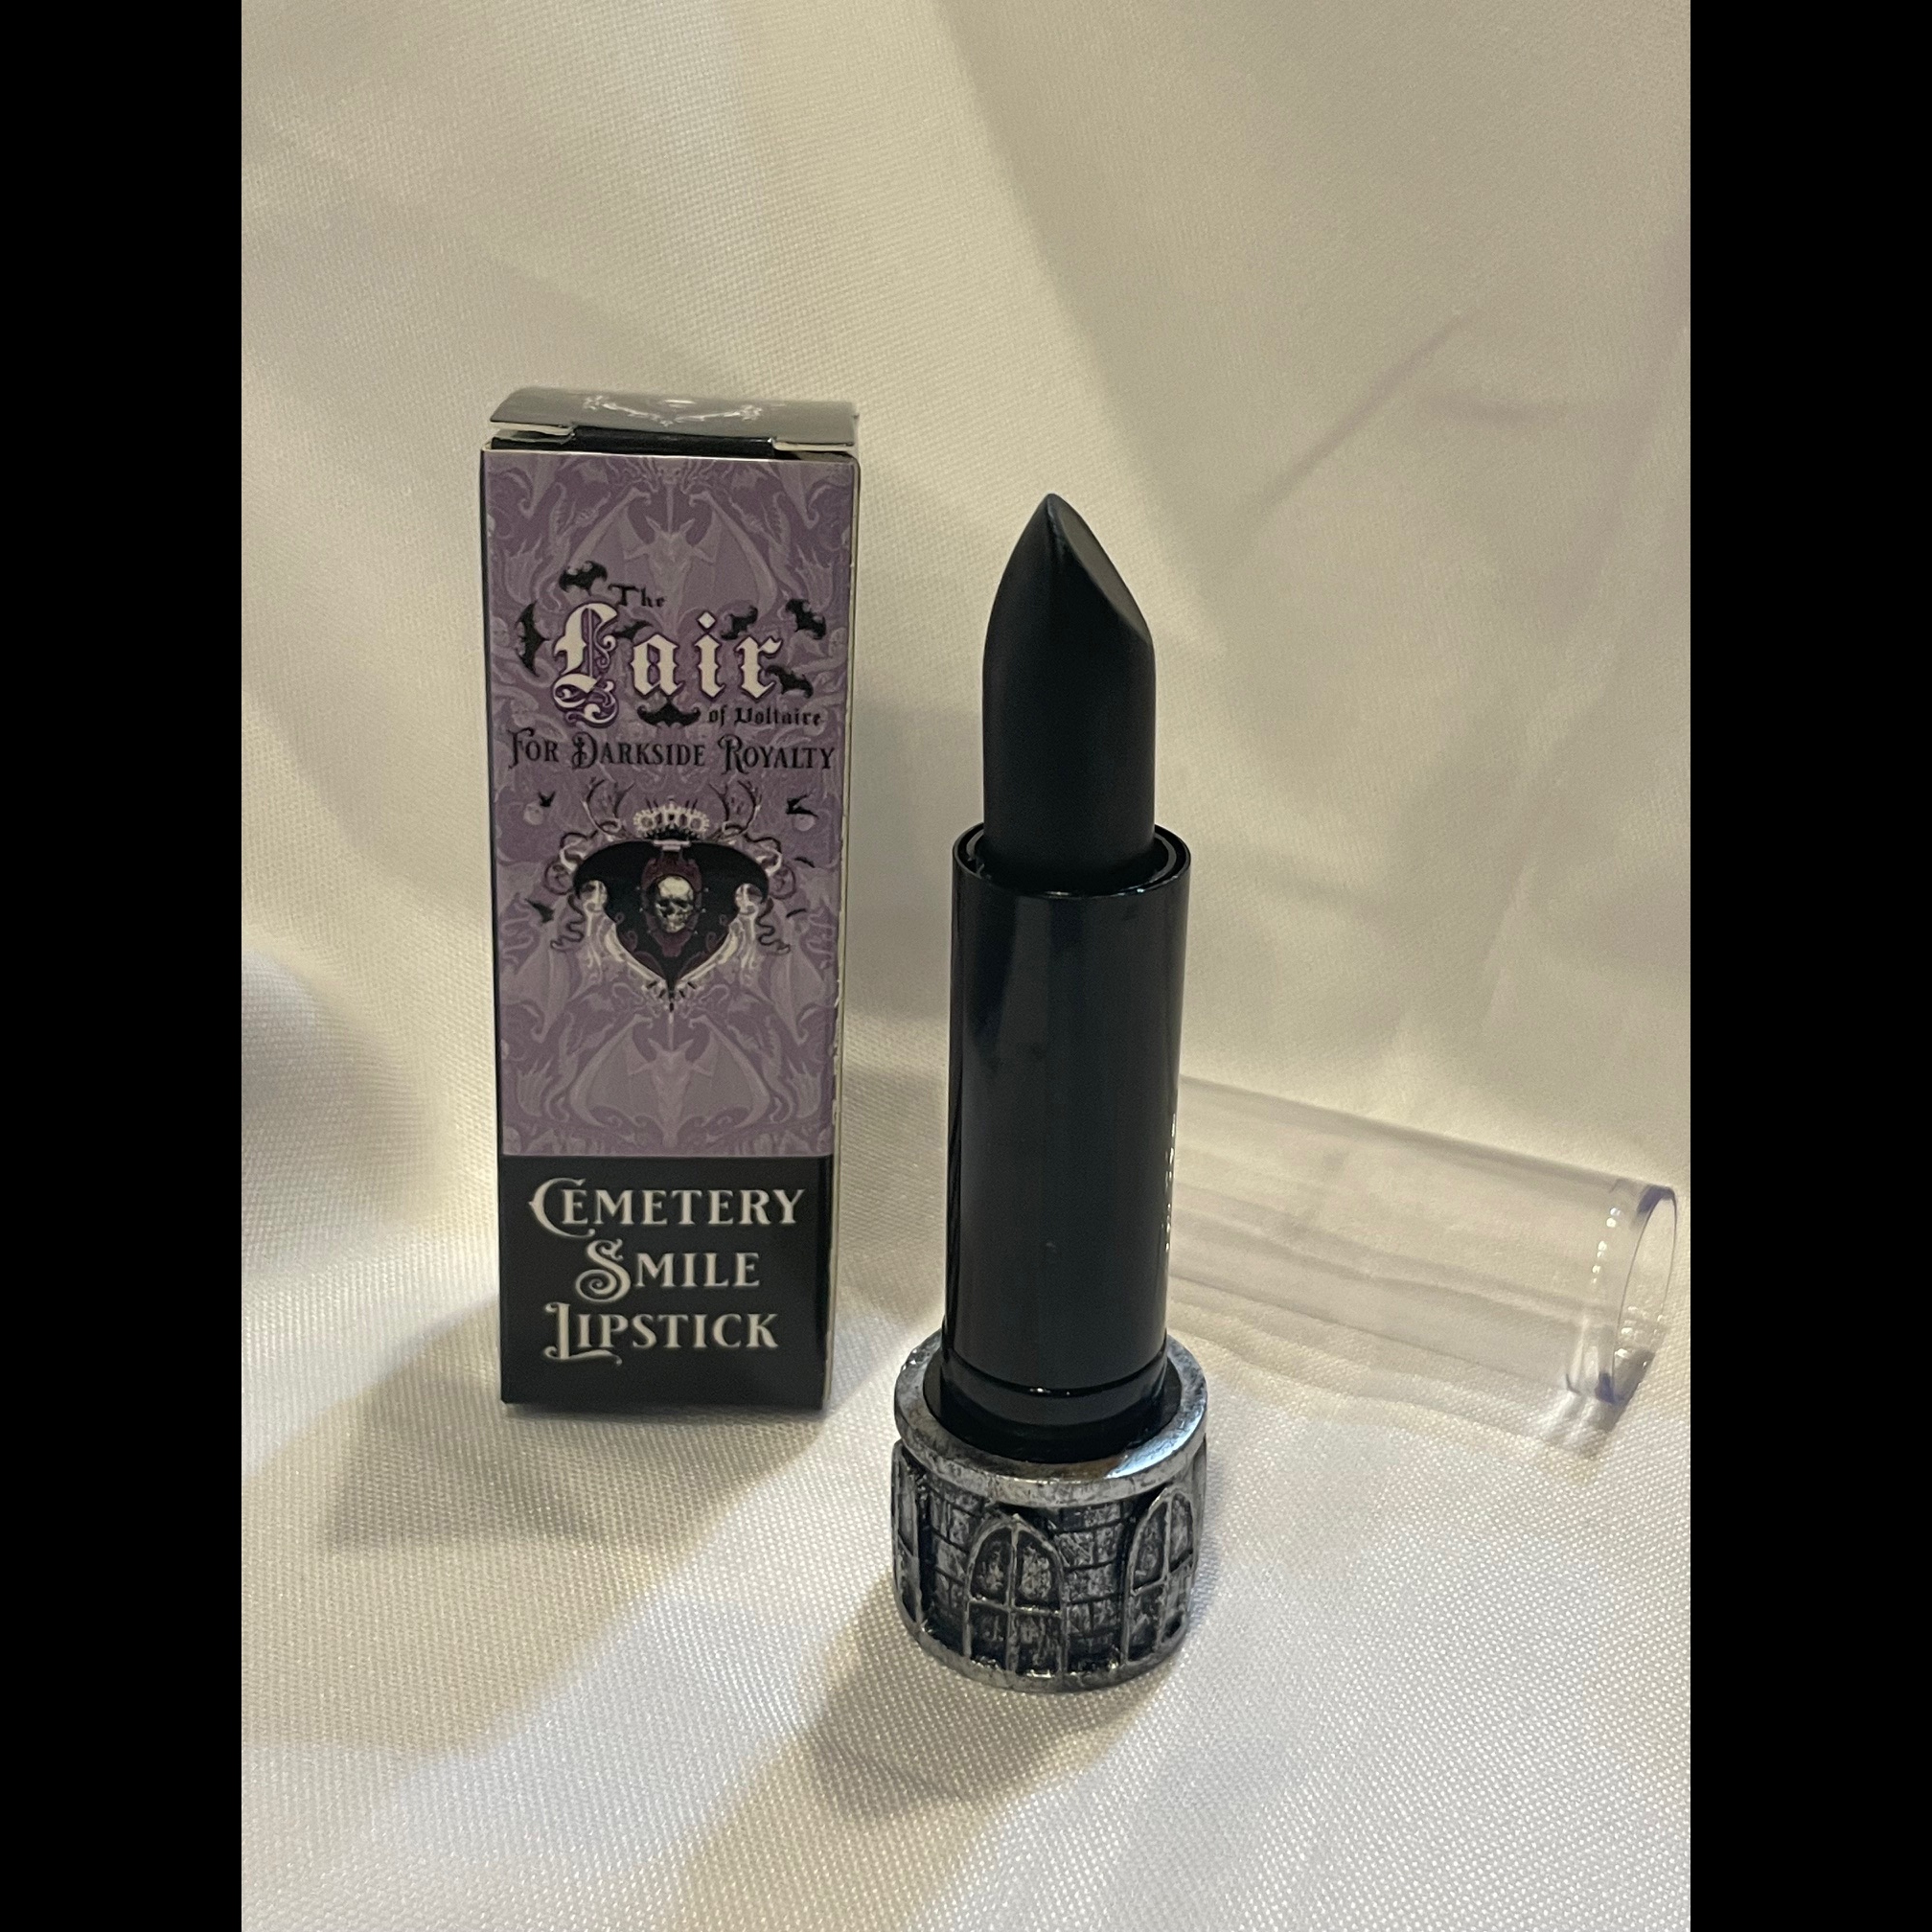 Cemetery Smile Lipstick Refill - Villian (Black)